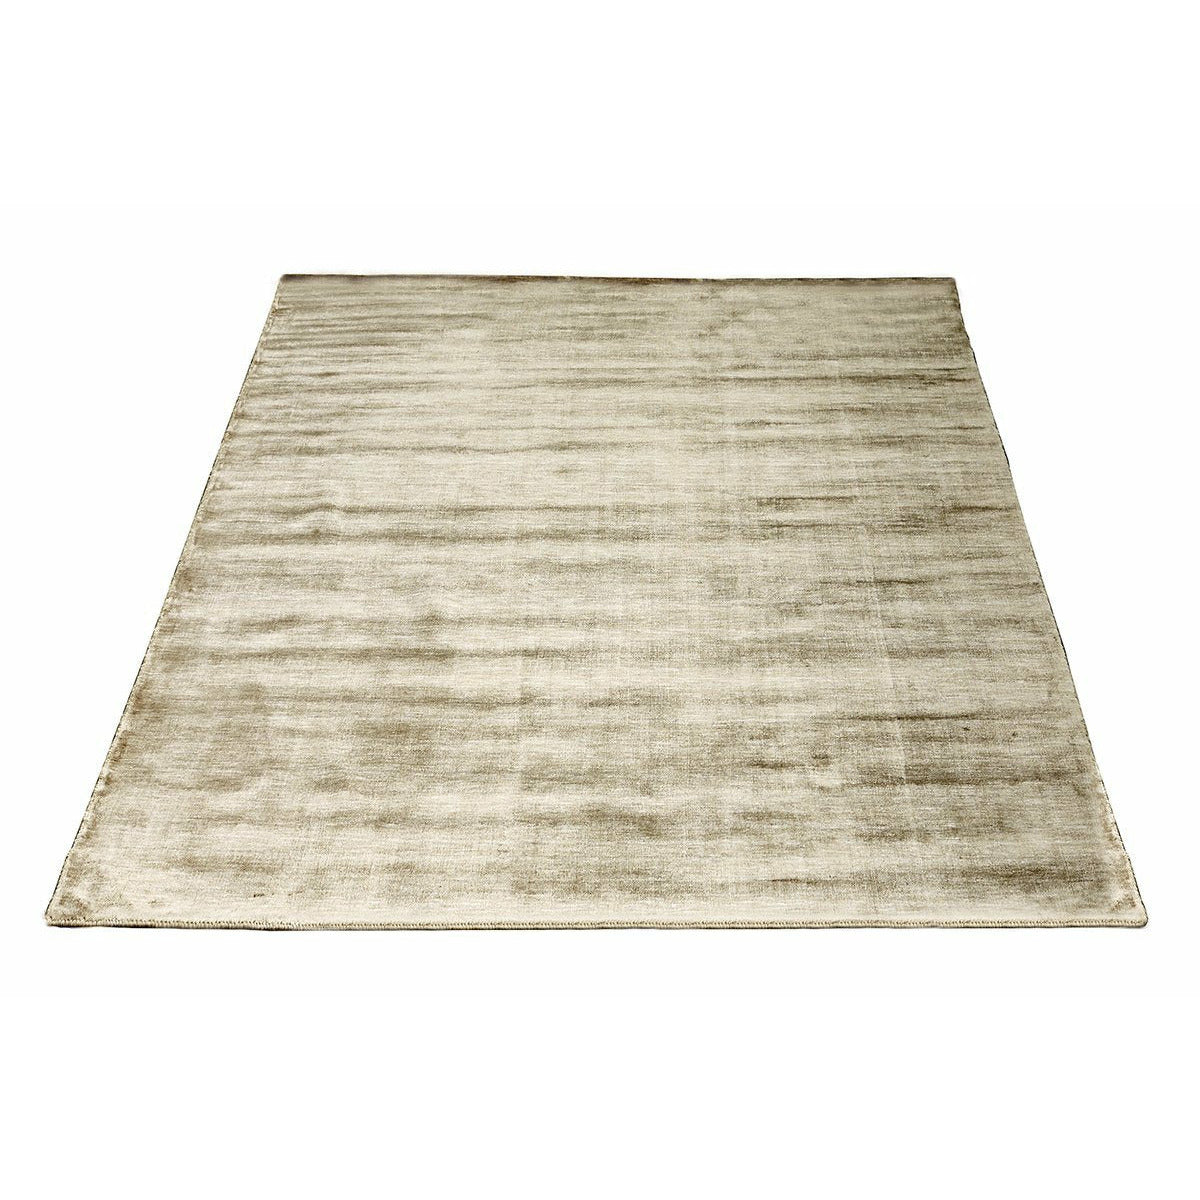 Massimo bambus dywan jasnobrązowy, 140x200 cm